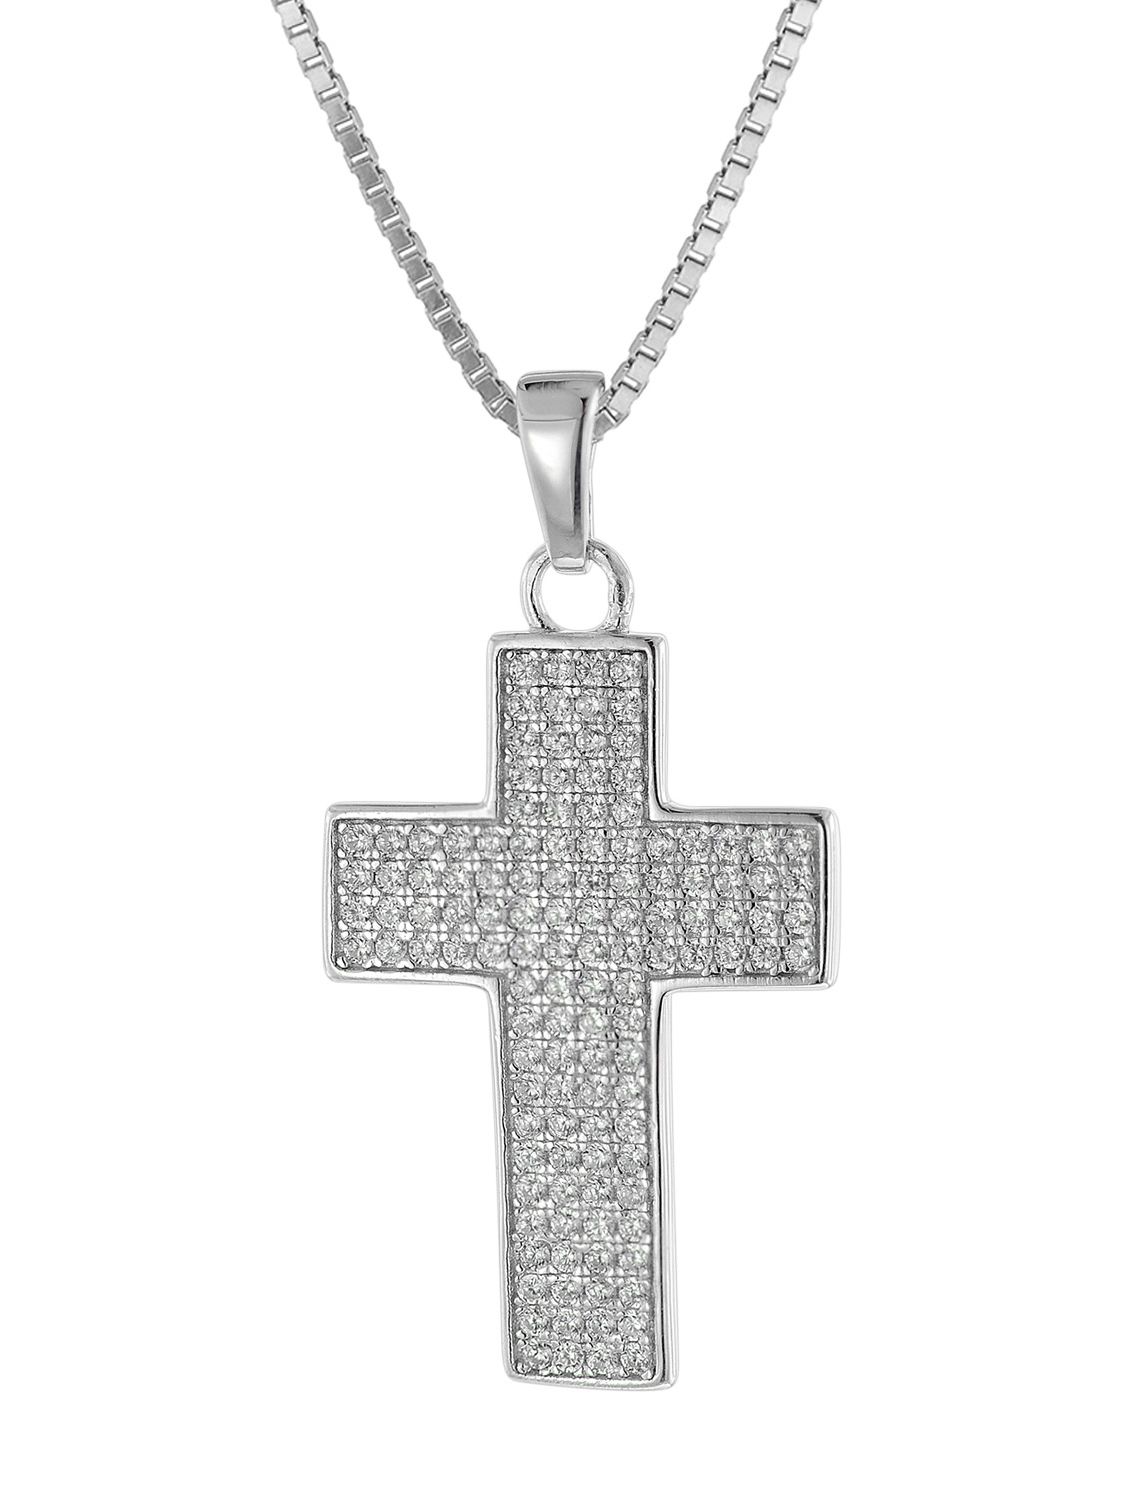 ASAMO Damen Herren Halskette Kreuz Anhänger Silber plattiert Kreuzkette H1059 